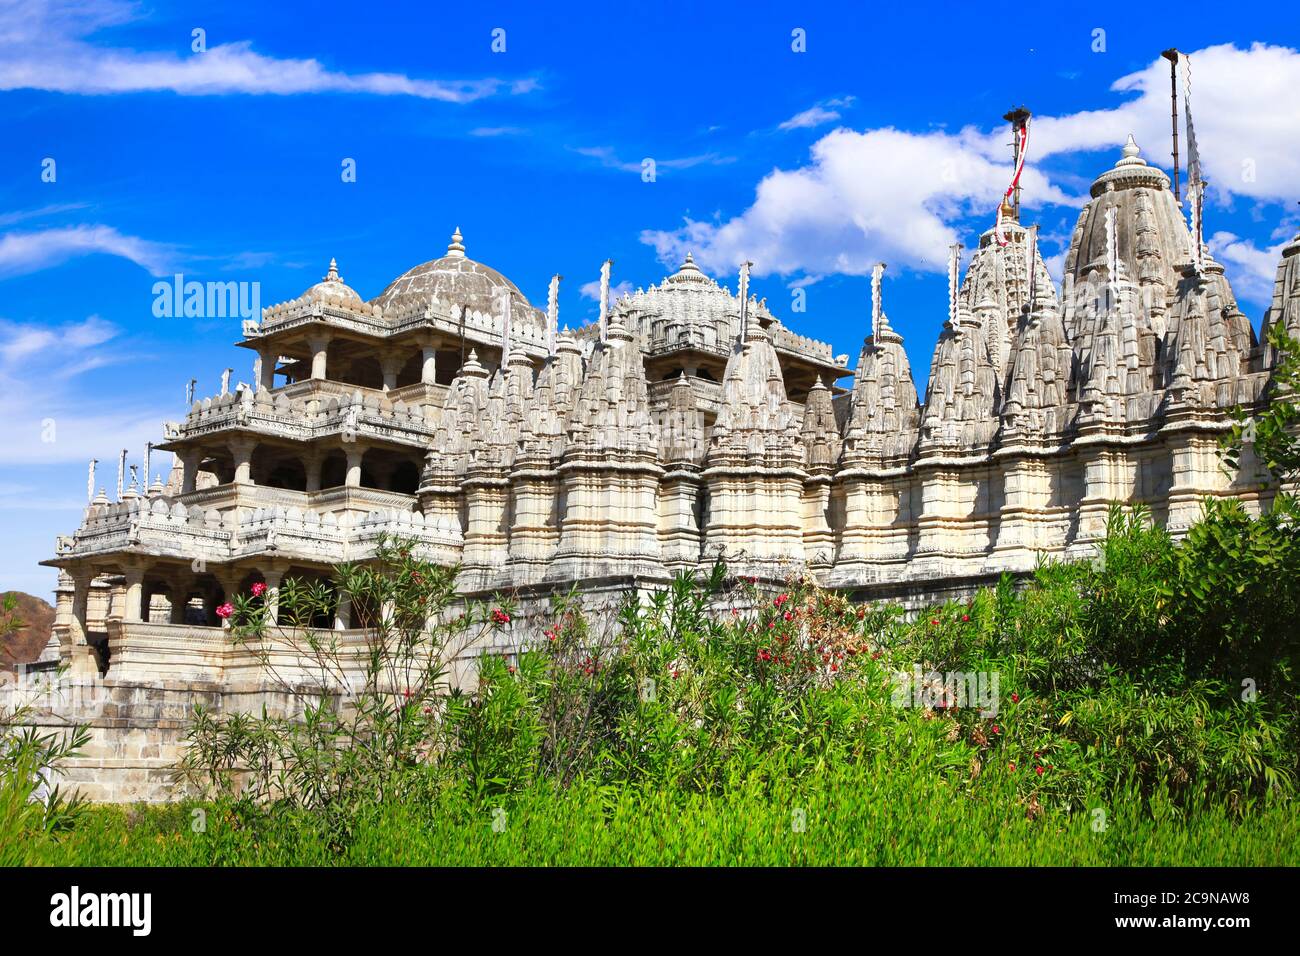 Le temple de Ranakpur est l'un des plus grands et des plus importants temples de la culture de Jain. Rajasthan, Inde Banque D'Images